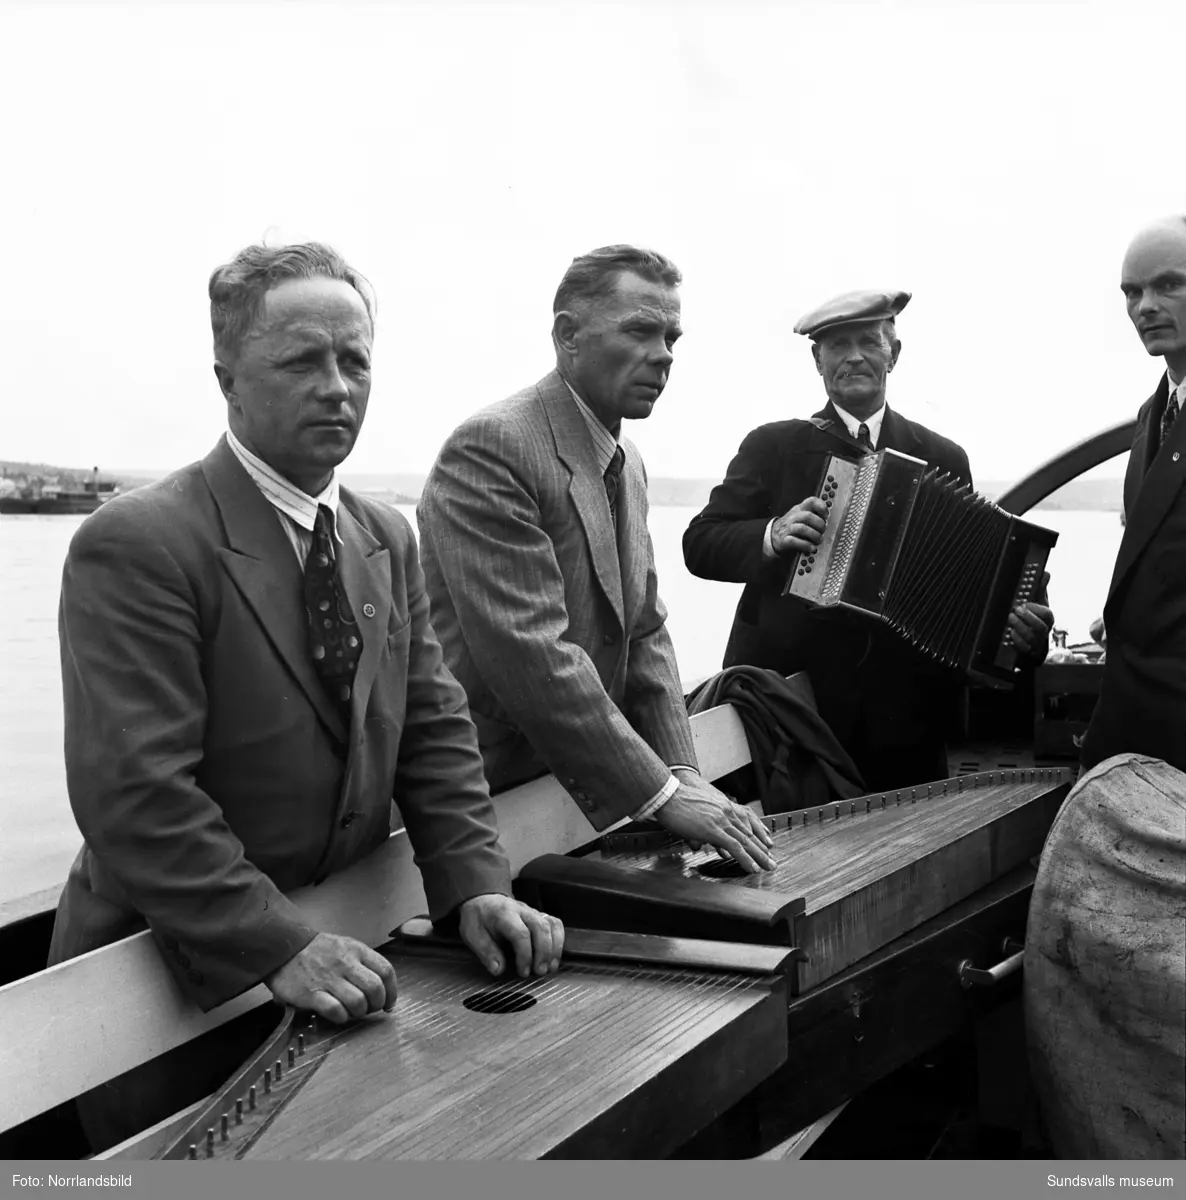 En grupp musikanter med sina instrument ombord på en båt i hamnen. Bilden tagen mot norra kajen och Heffnersområdet.